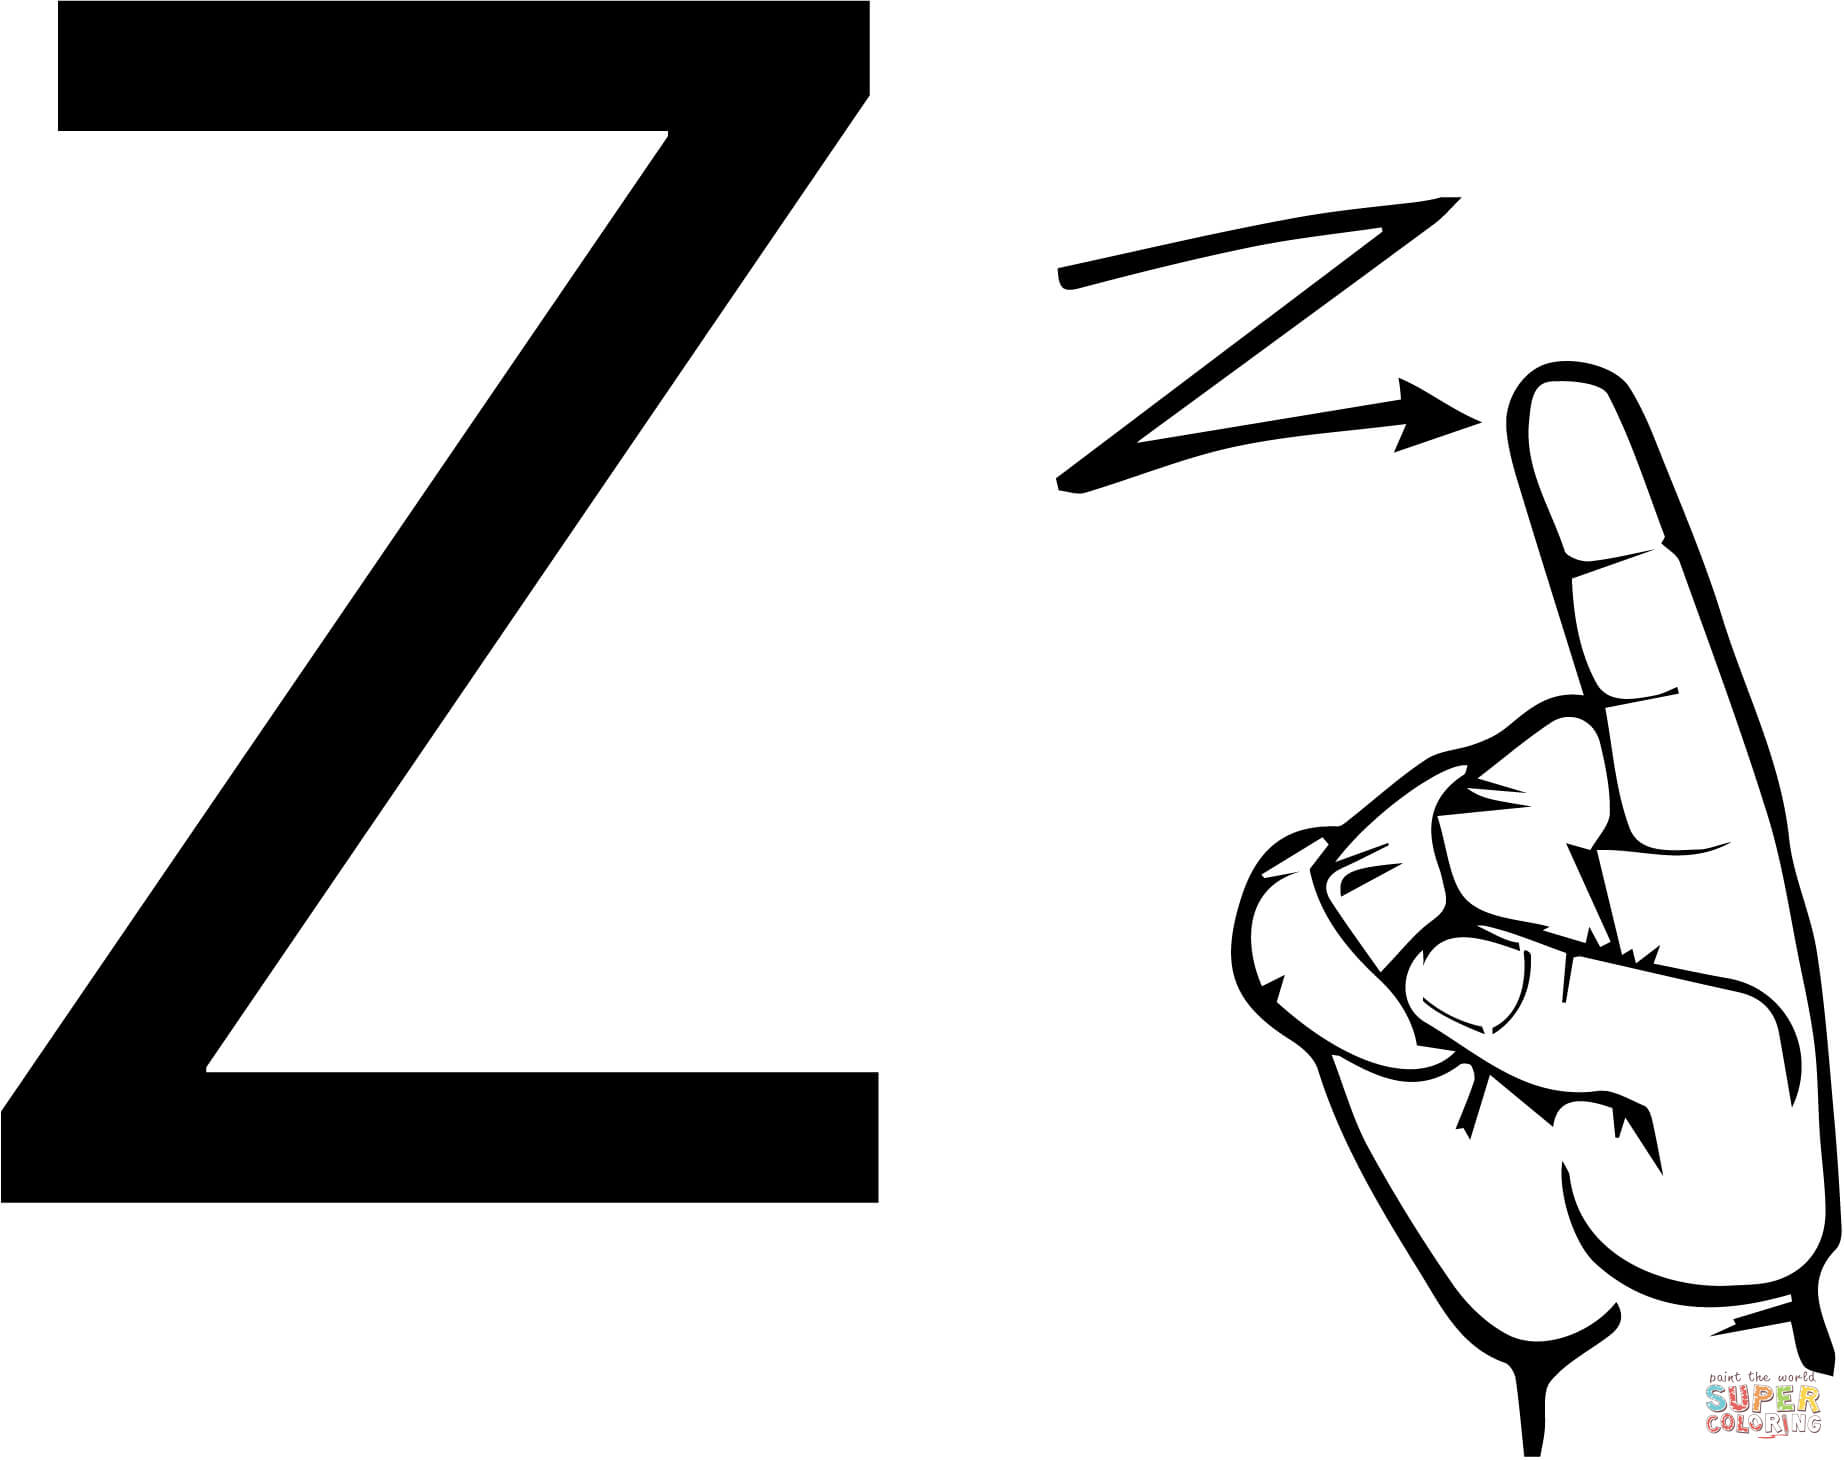 Letra Z da linguagem de sinais ASL da letra Z